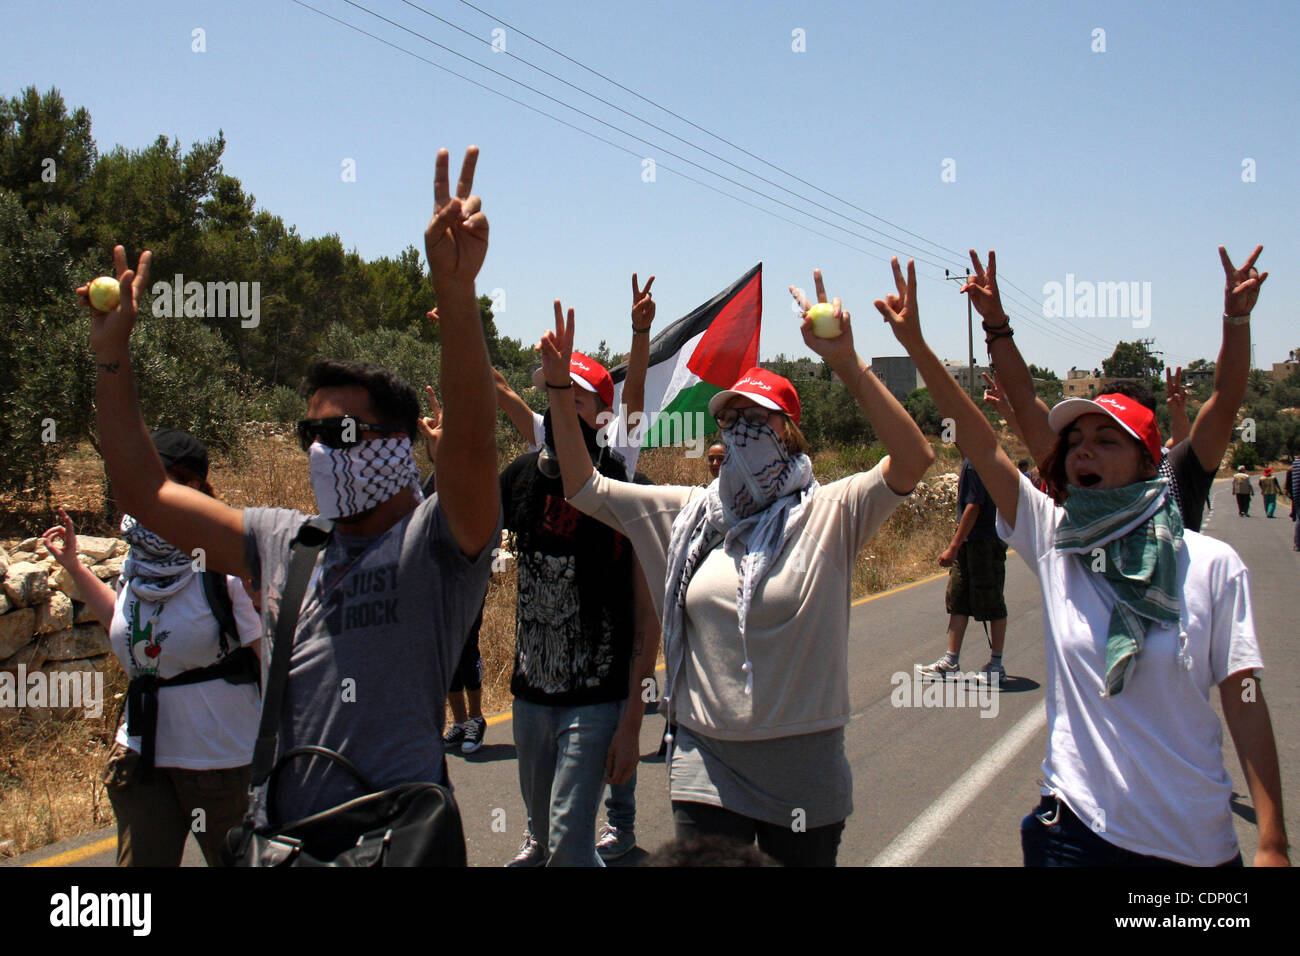 Des manifestants palestiniens et étrangers manifester contre l'occupation israélienne et les colonies le 11 juillet 2011dans le village d'Ezbet Tabeeb près de la ville cisjordanienne de Qalqiliya. Photo de Wagdi Eshtayah Banque D'Images